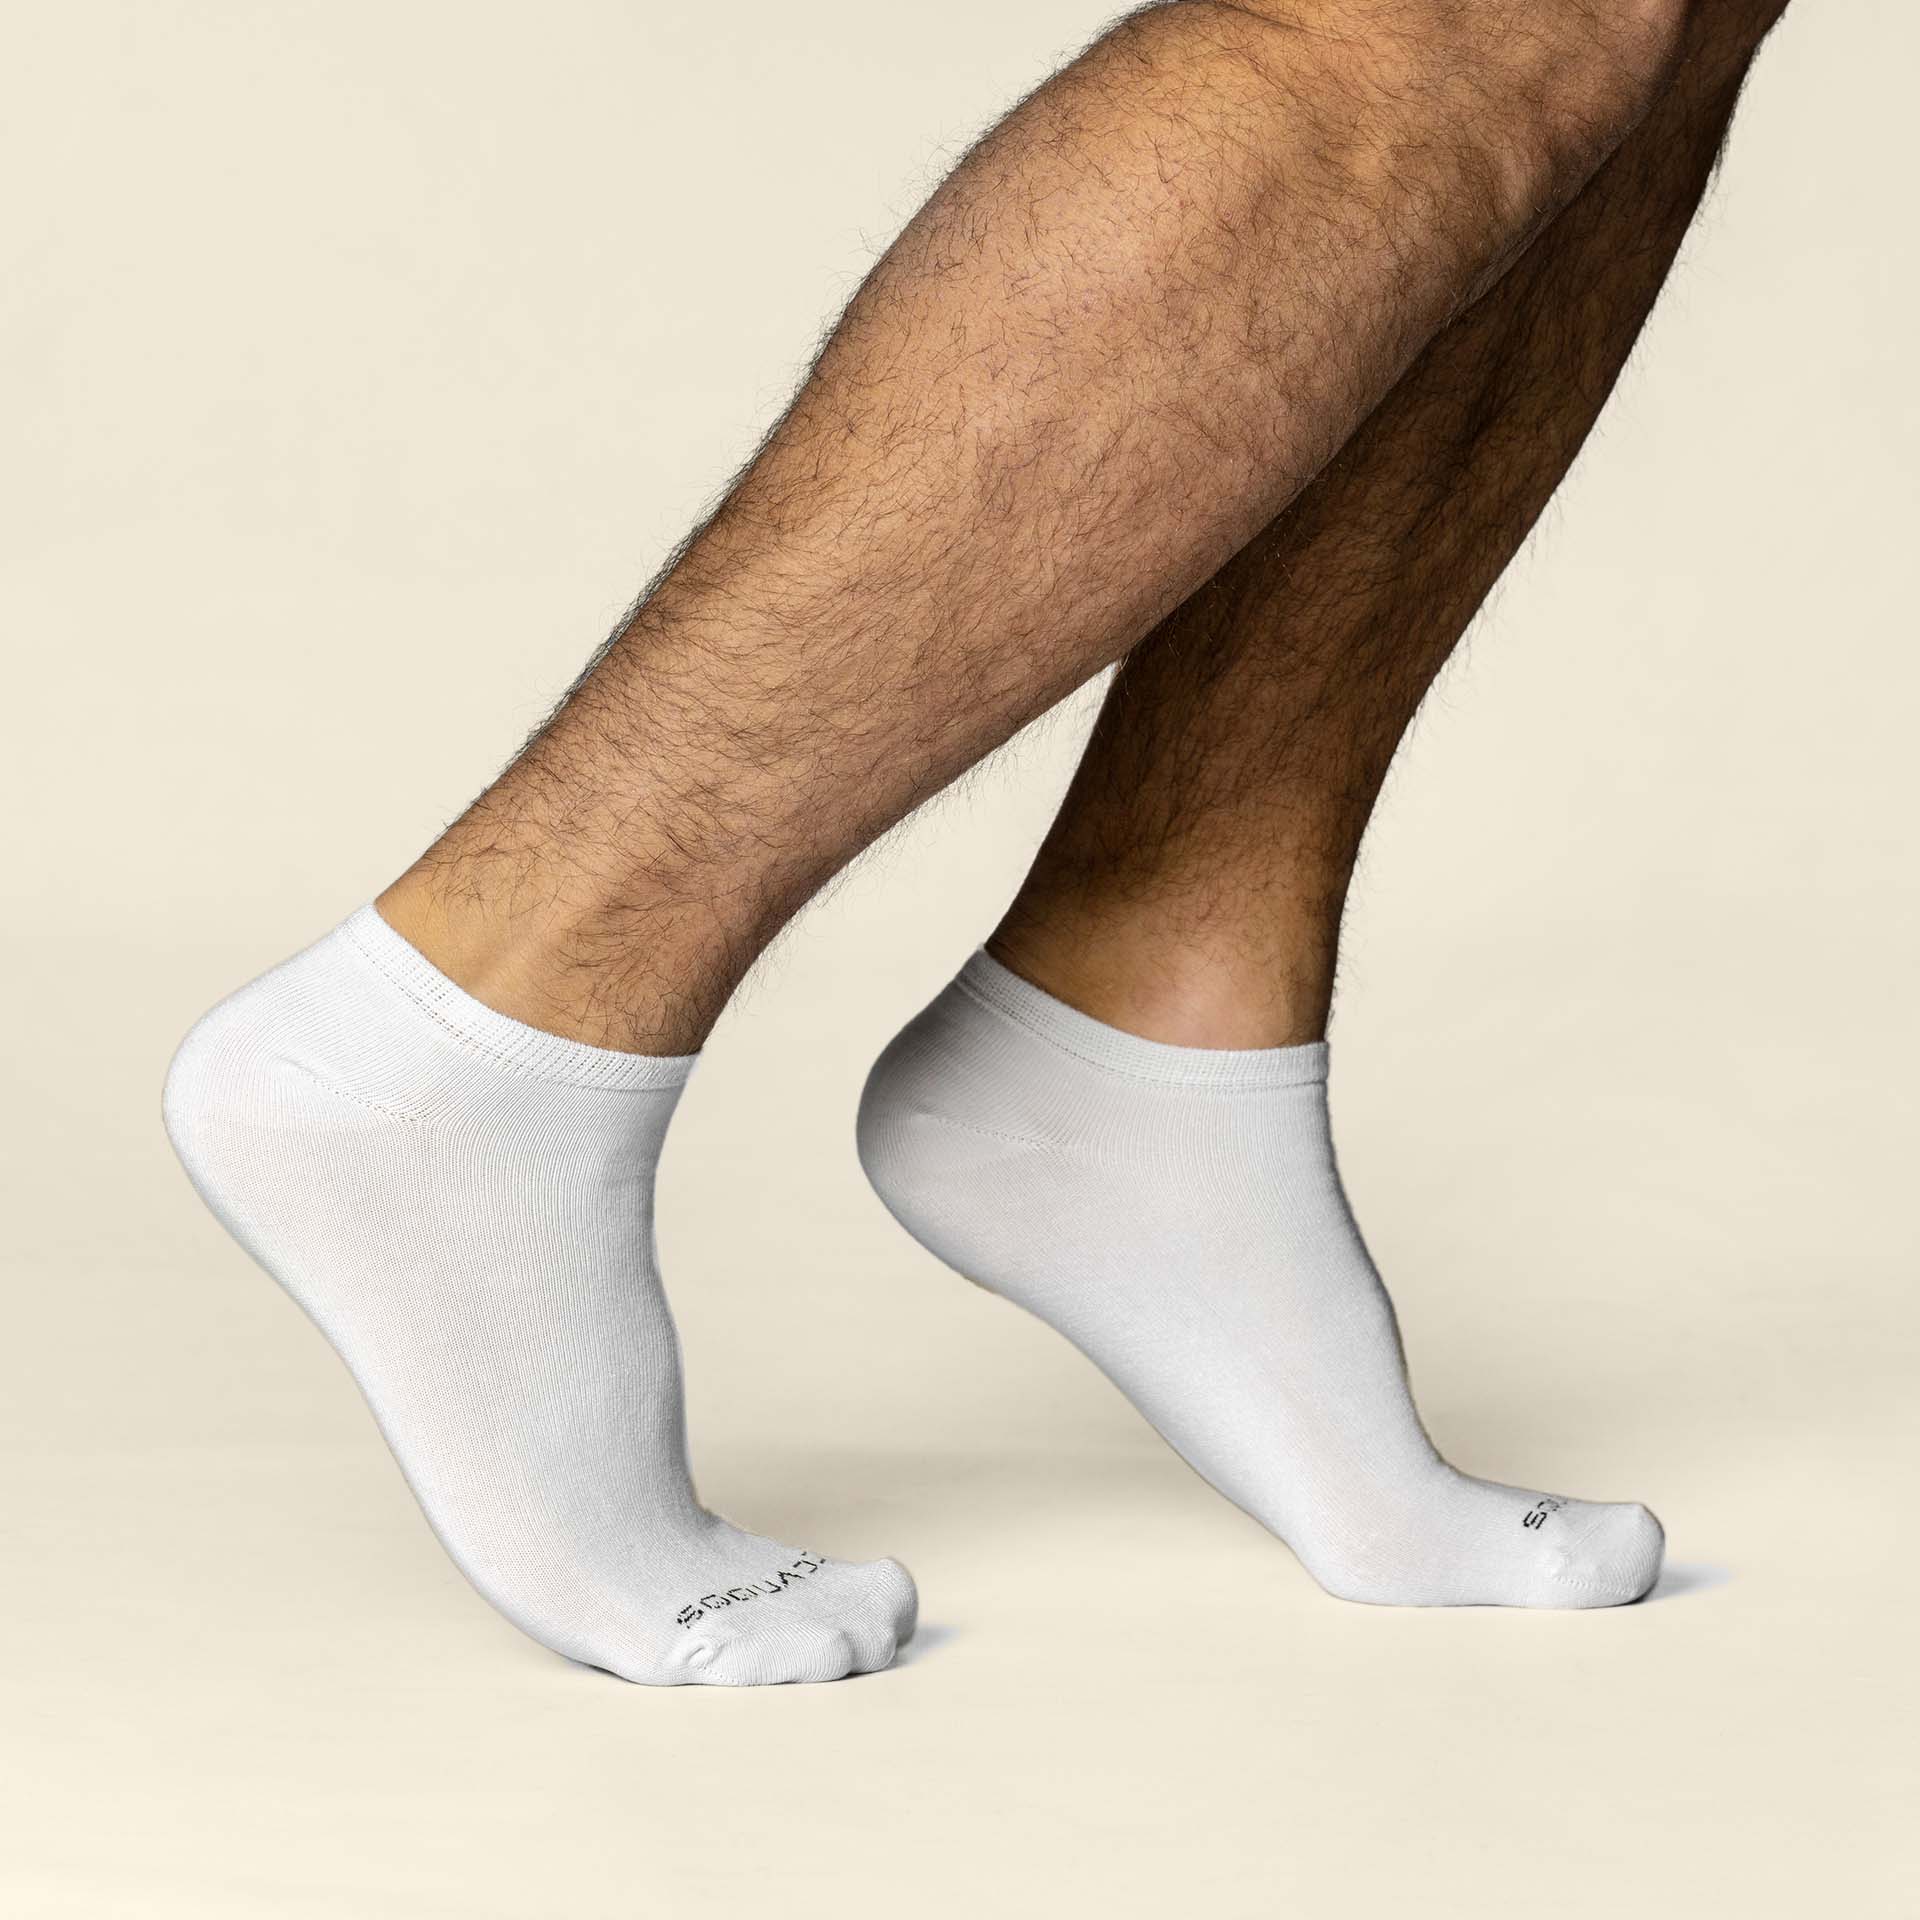 Duurzame sokken,sokken duurzaam,duurzame sokken heren,duurzame sokken dames,eerlijke sokken